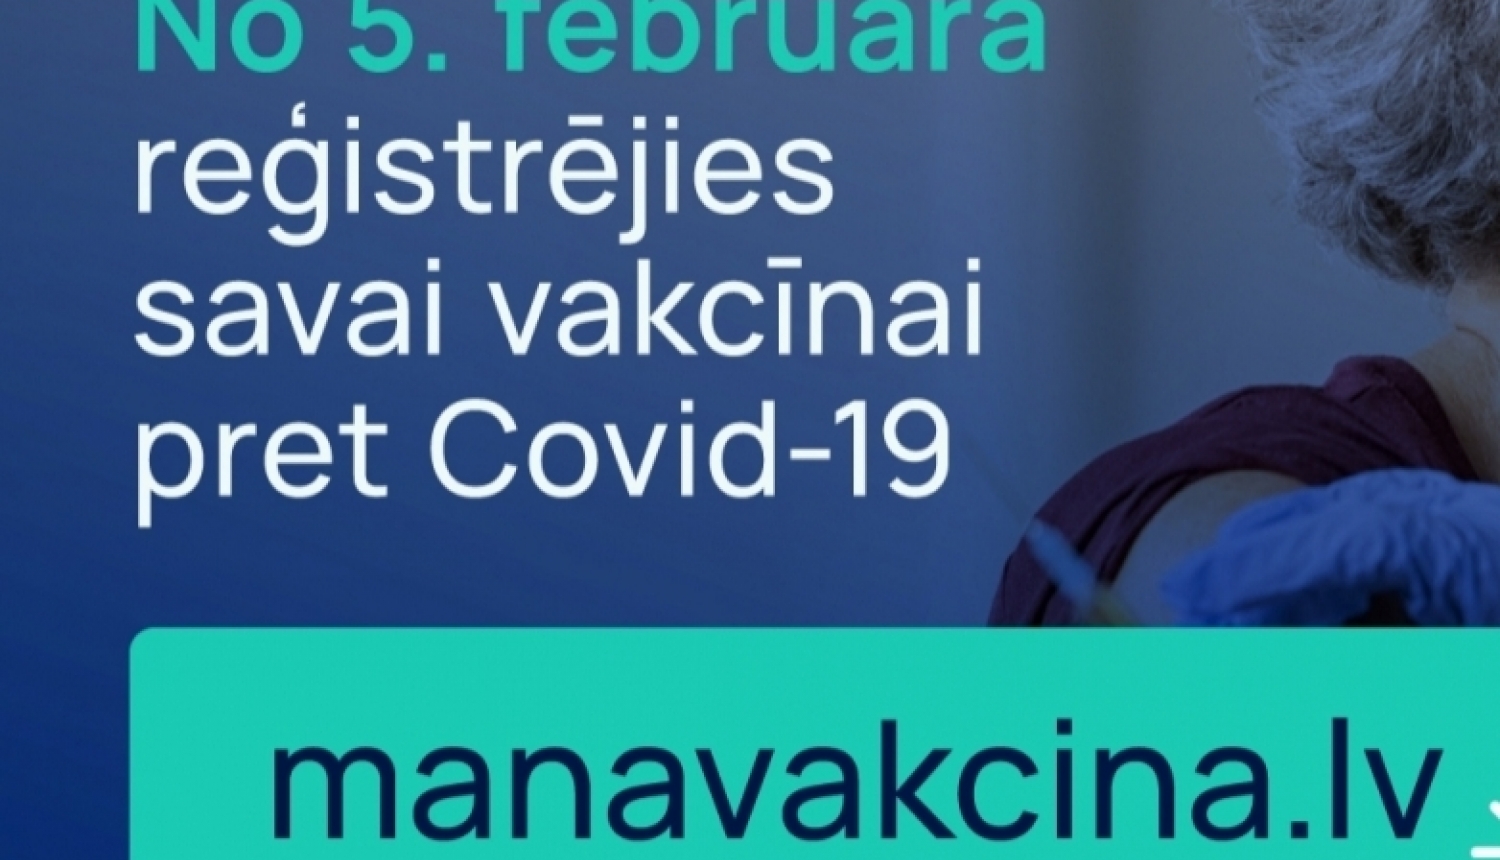 Darbību uzsāk vakcīnas pret Covid-19 agrīnās pieteikšanās vietne www.manavakcina.lv